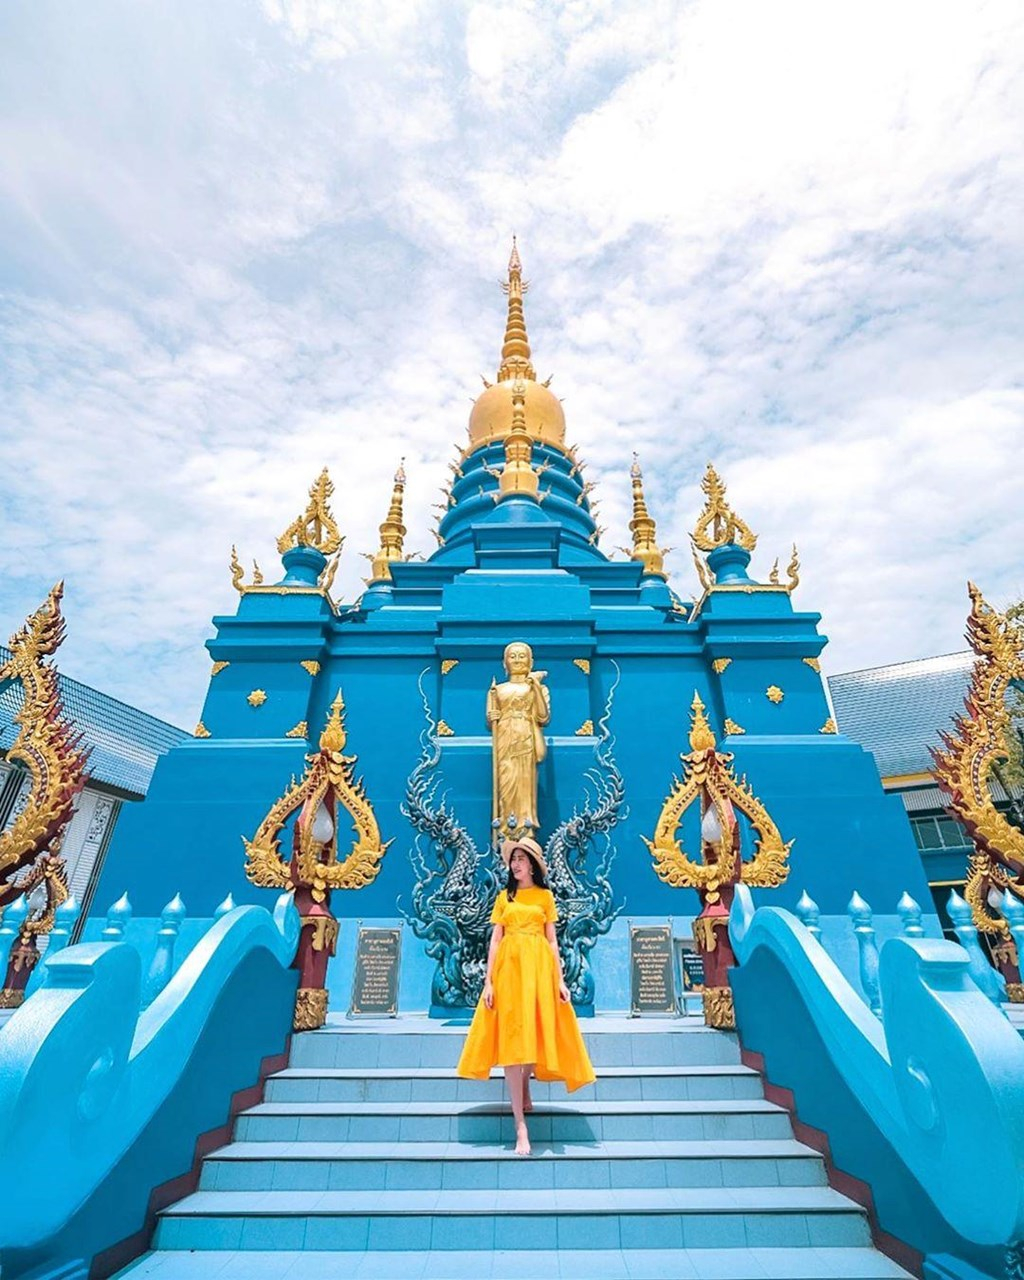 Nếu như ở ngôi chùa Wat Rong Khun được bao phủ bằng toàn bộ màu trắng tinh khôi thì ở Wat Rong Seur Ten được thiết kế với một màu xanh cũng độc đáo không kém. Màu xanh của ngôi chùa được tương trưng cho đức hạnh của Phật tổ được lan truyền ra khắp thế giới. Ảnh: Sưu tầm.